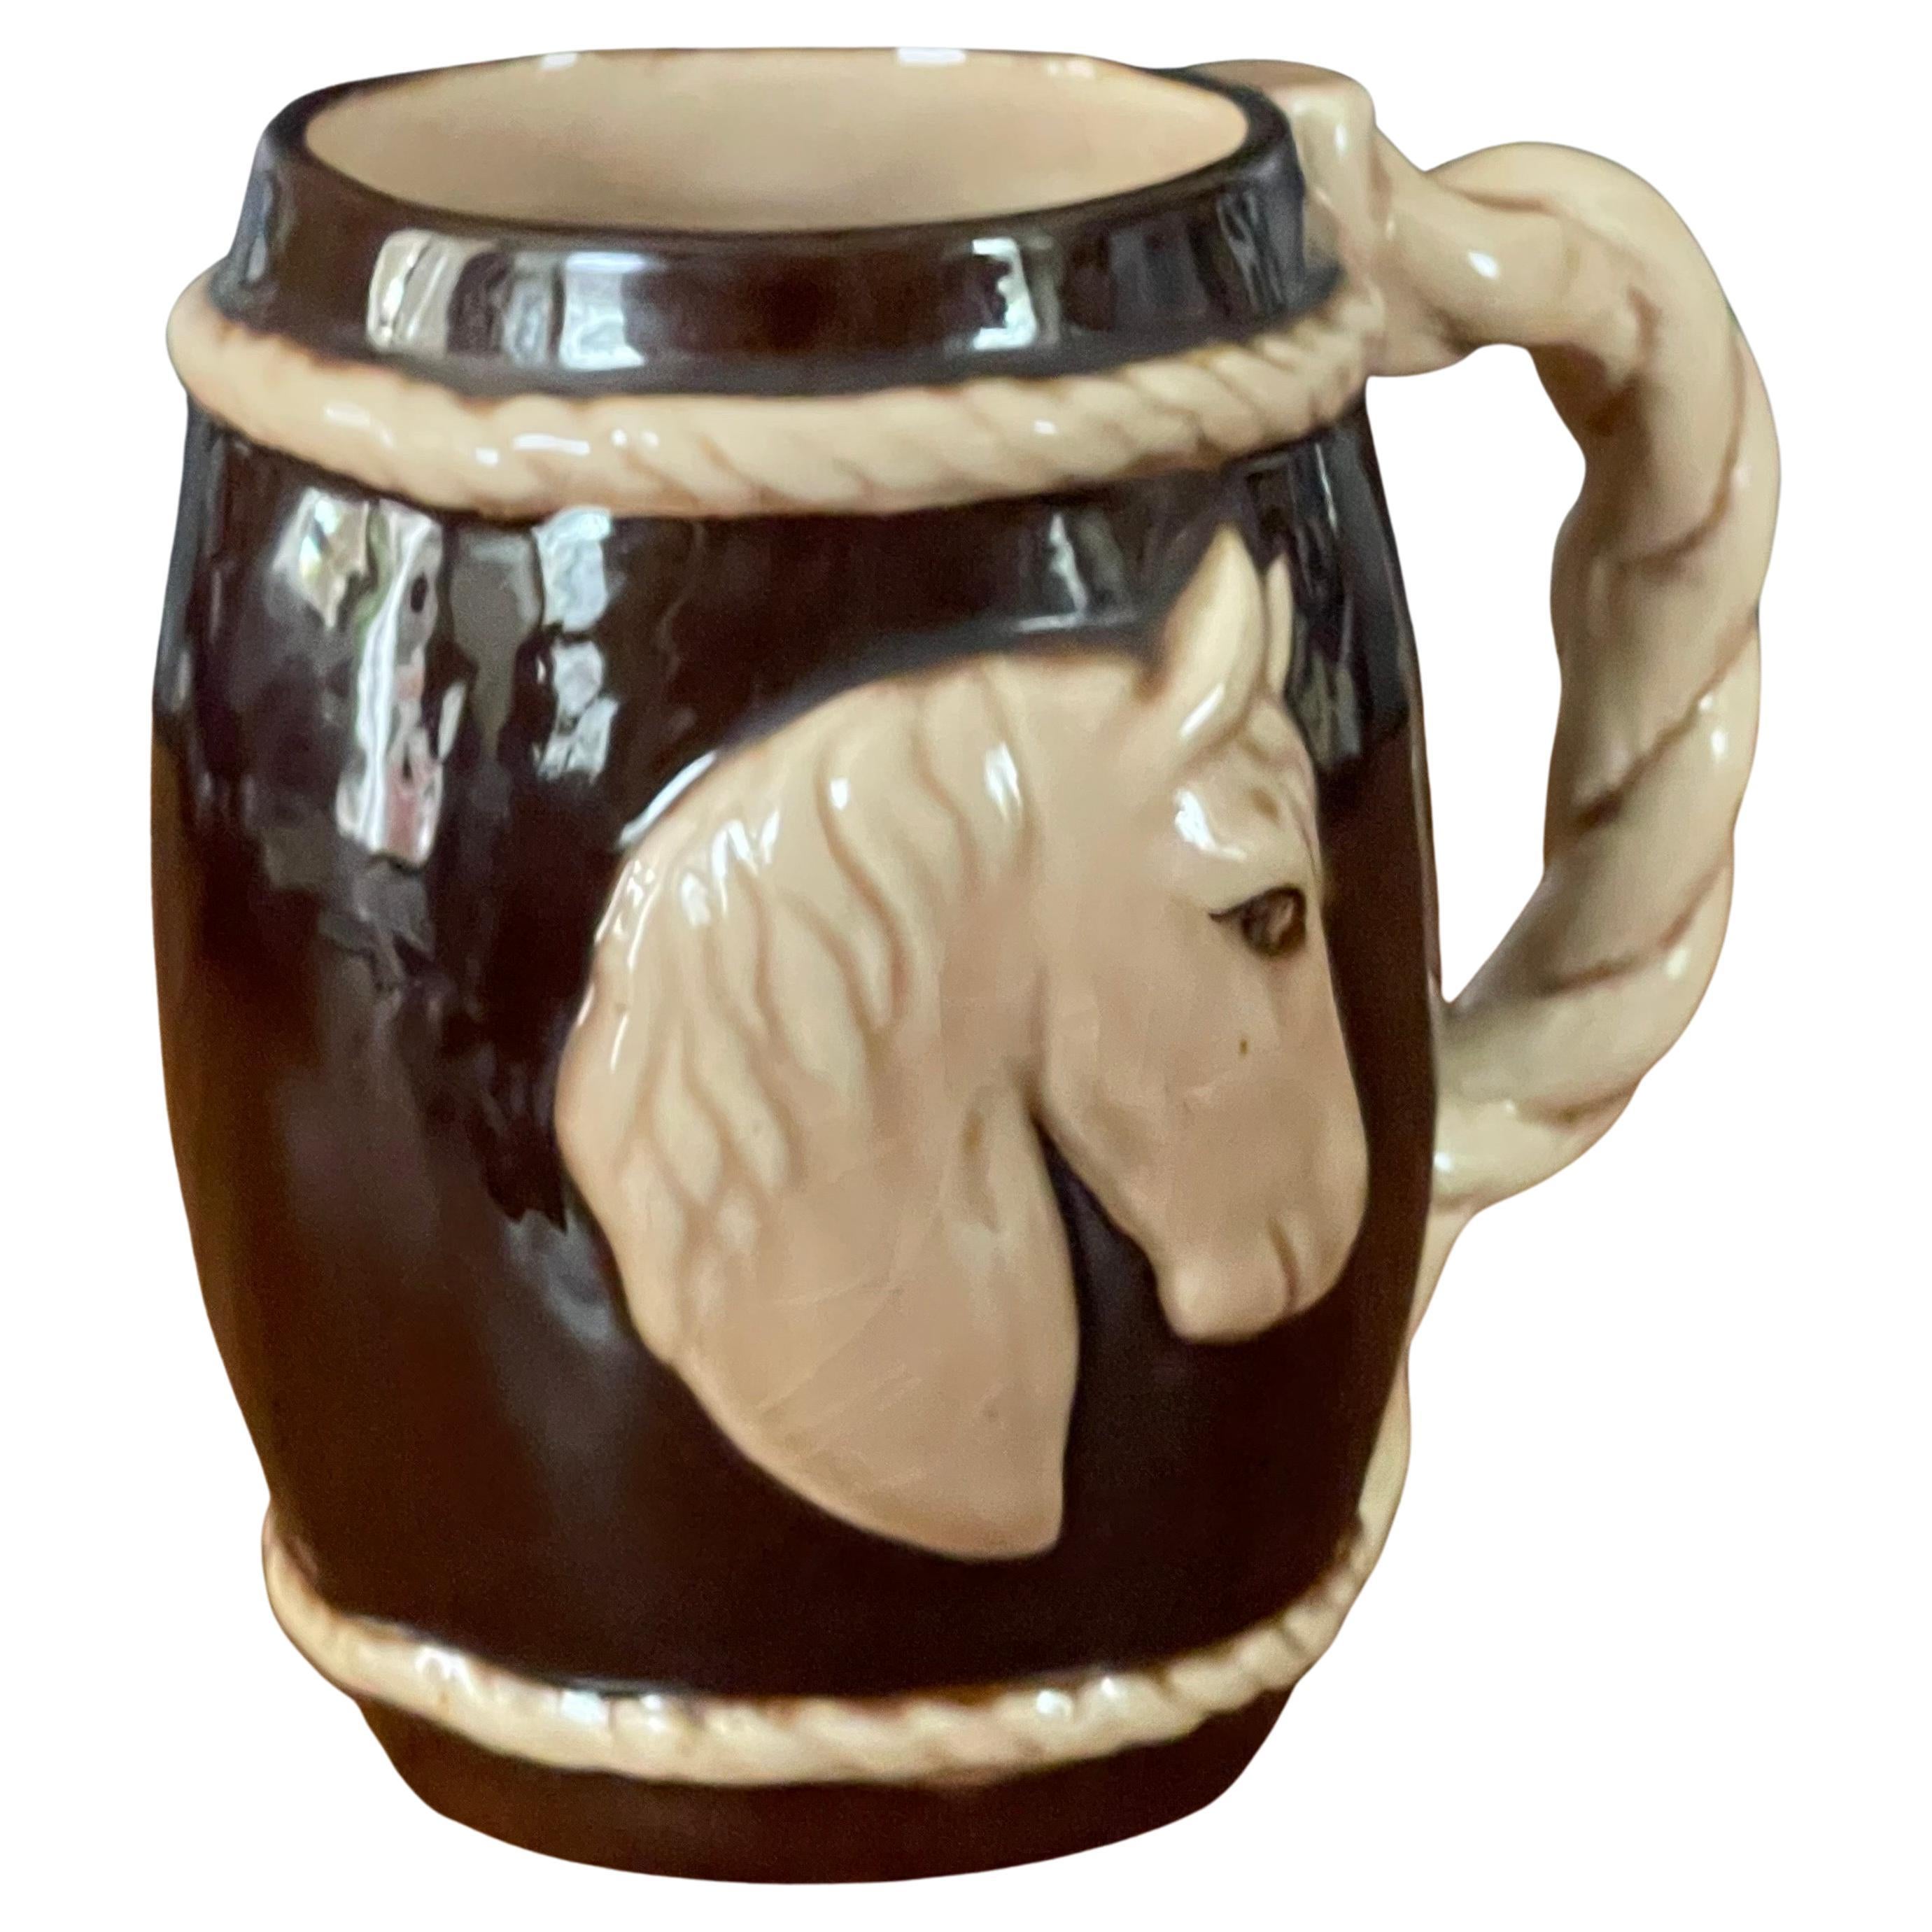 Tasse à cheval en céramique de Dorothy Kindell, vers les années 1940. Cette pièce difficile à trouver est en bon état (quelques craquelures sont présentes) et mesure 4,5 